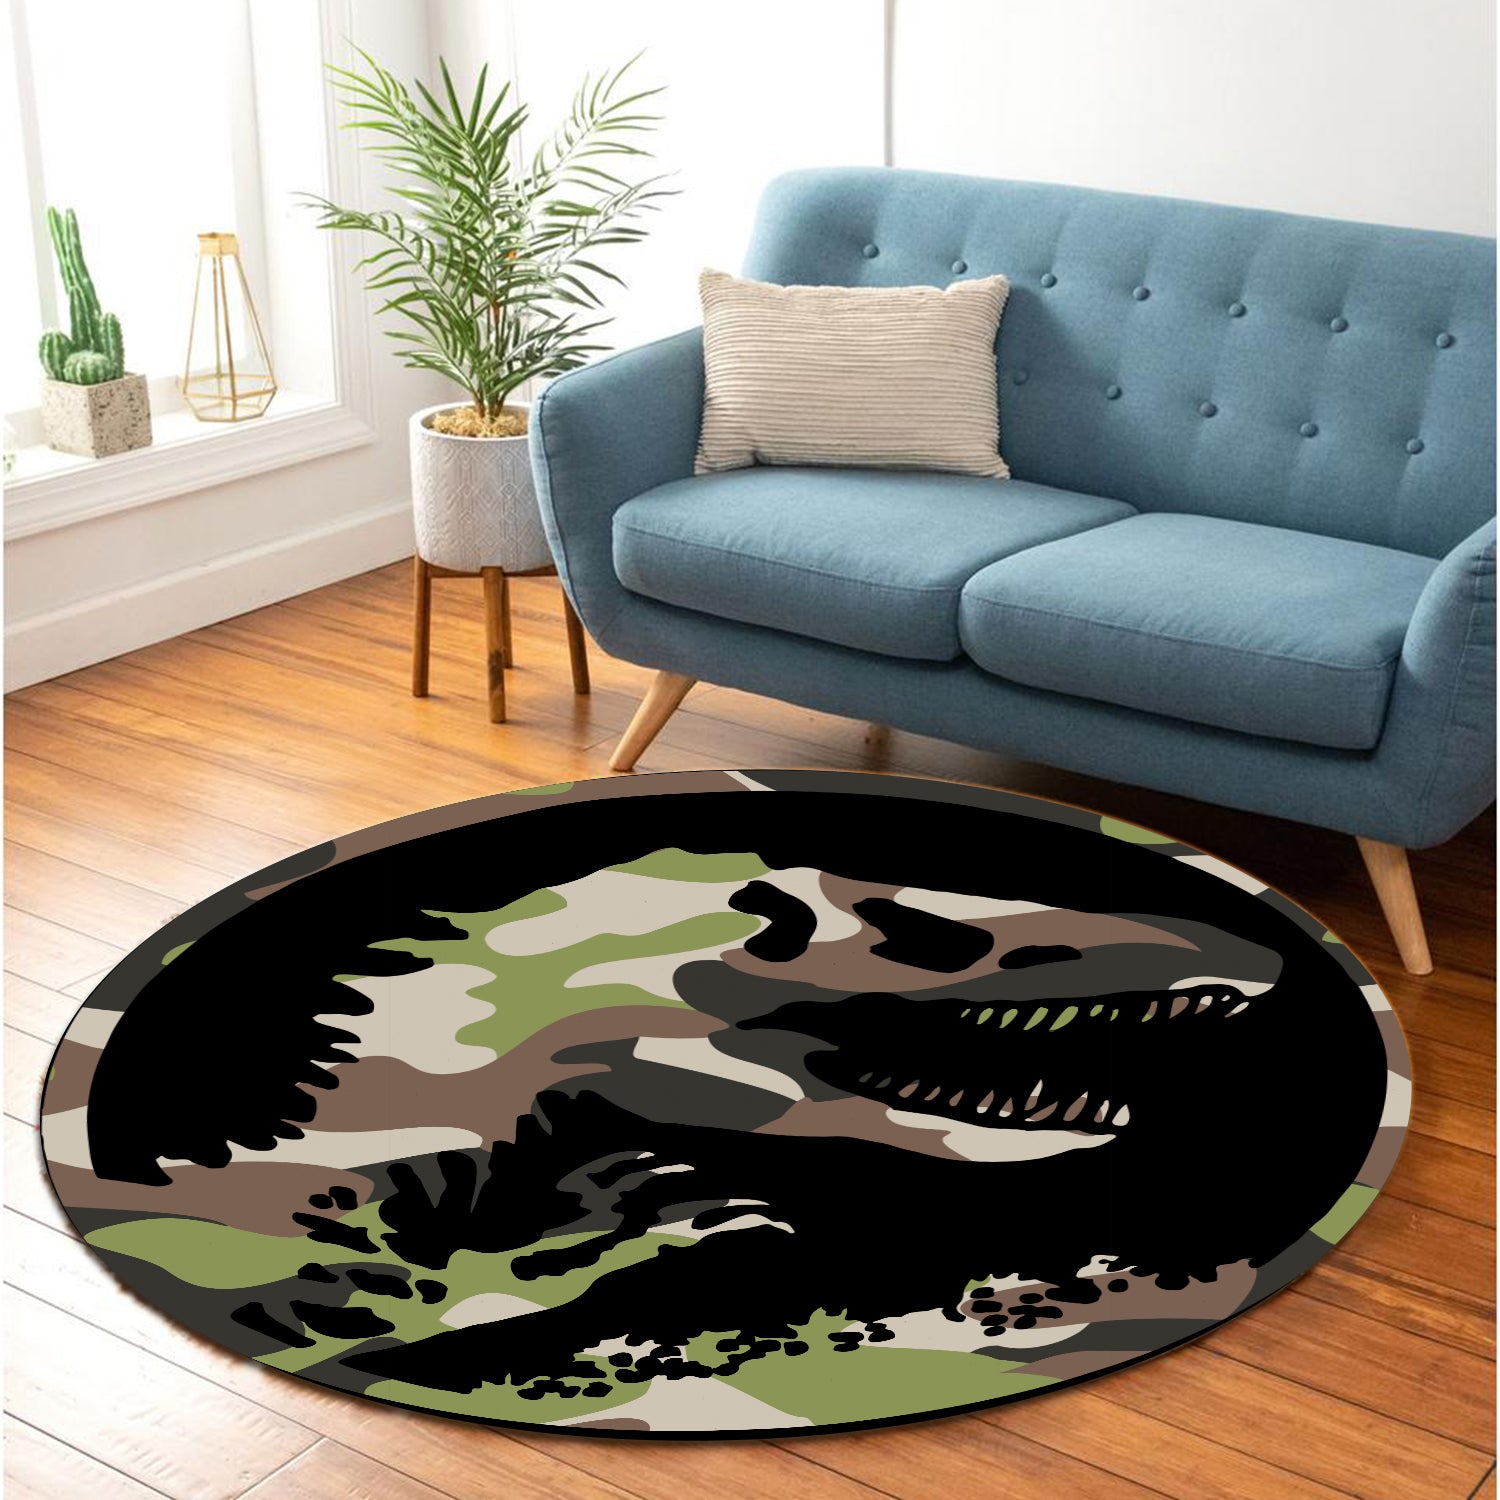 Dinasour T-rex Camo Round Carpet Rug Bedroom Livingroom Home Decor Nearkii